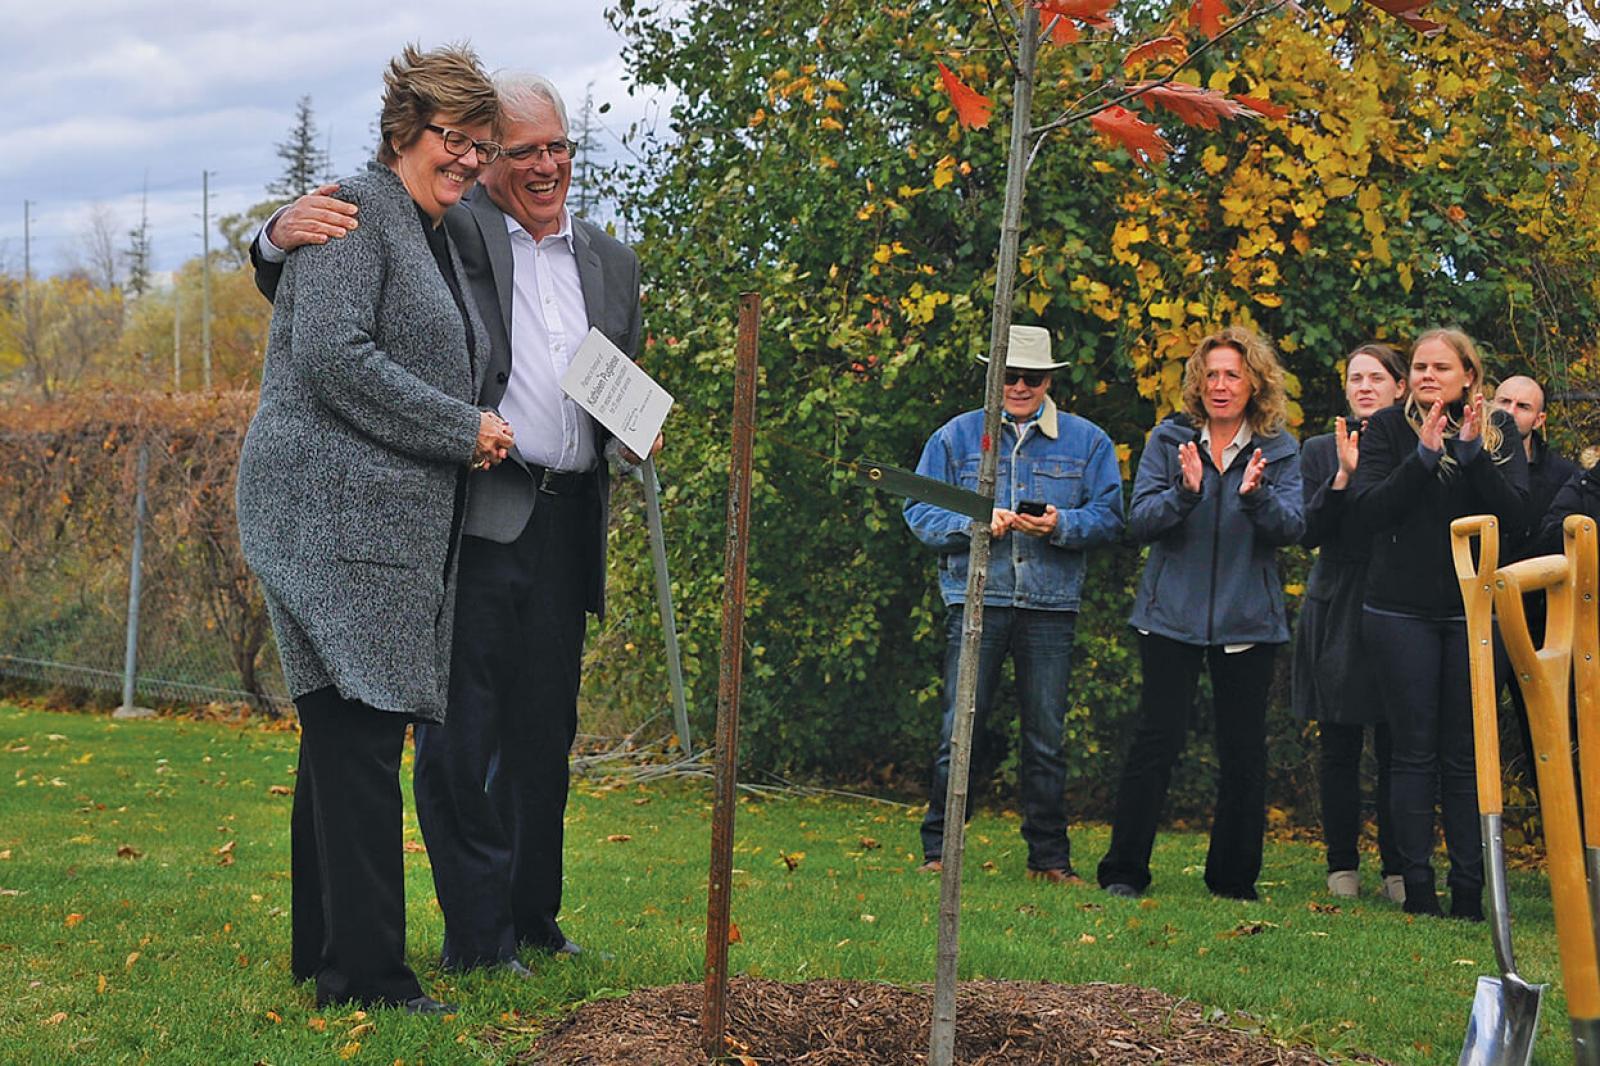 Tree planted in honour of Kathleen Pugliese